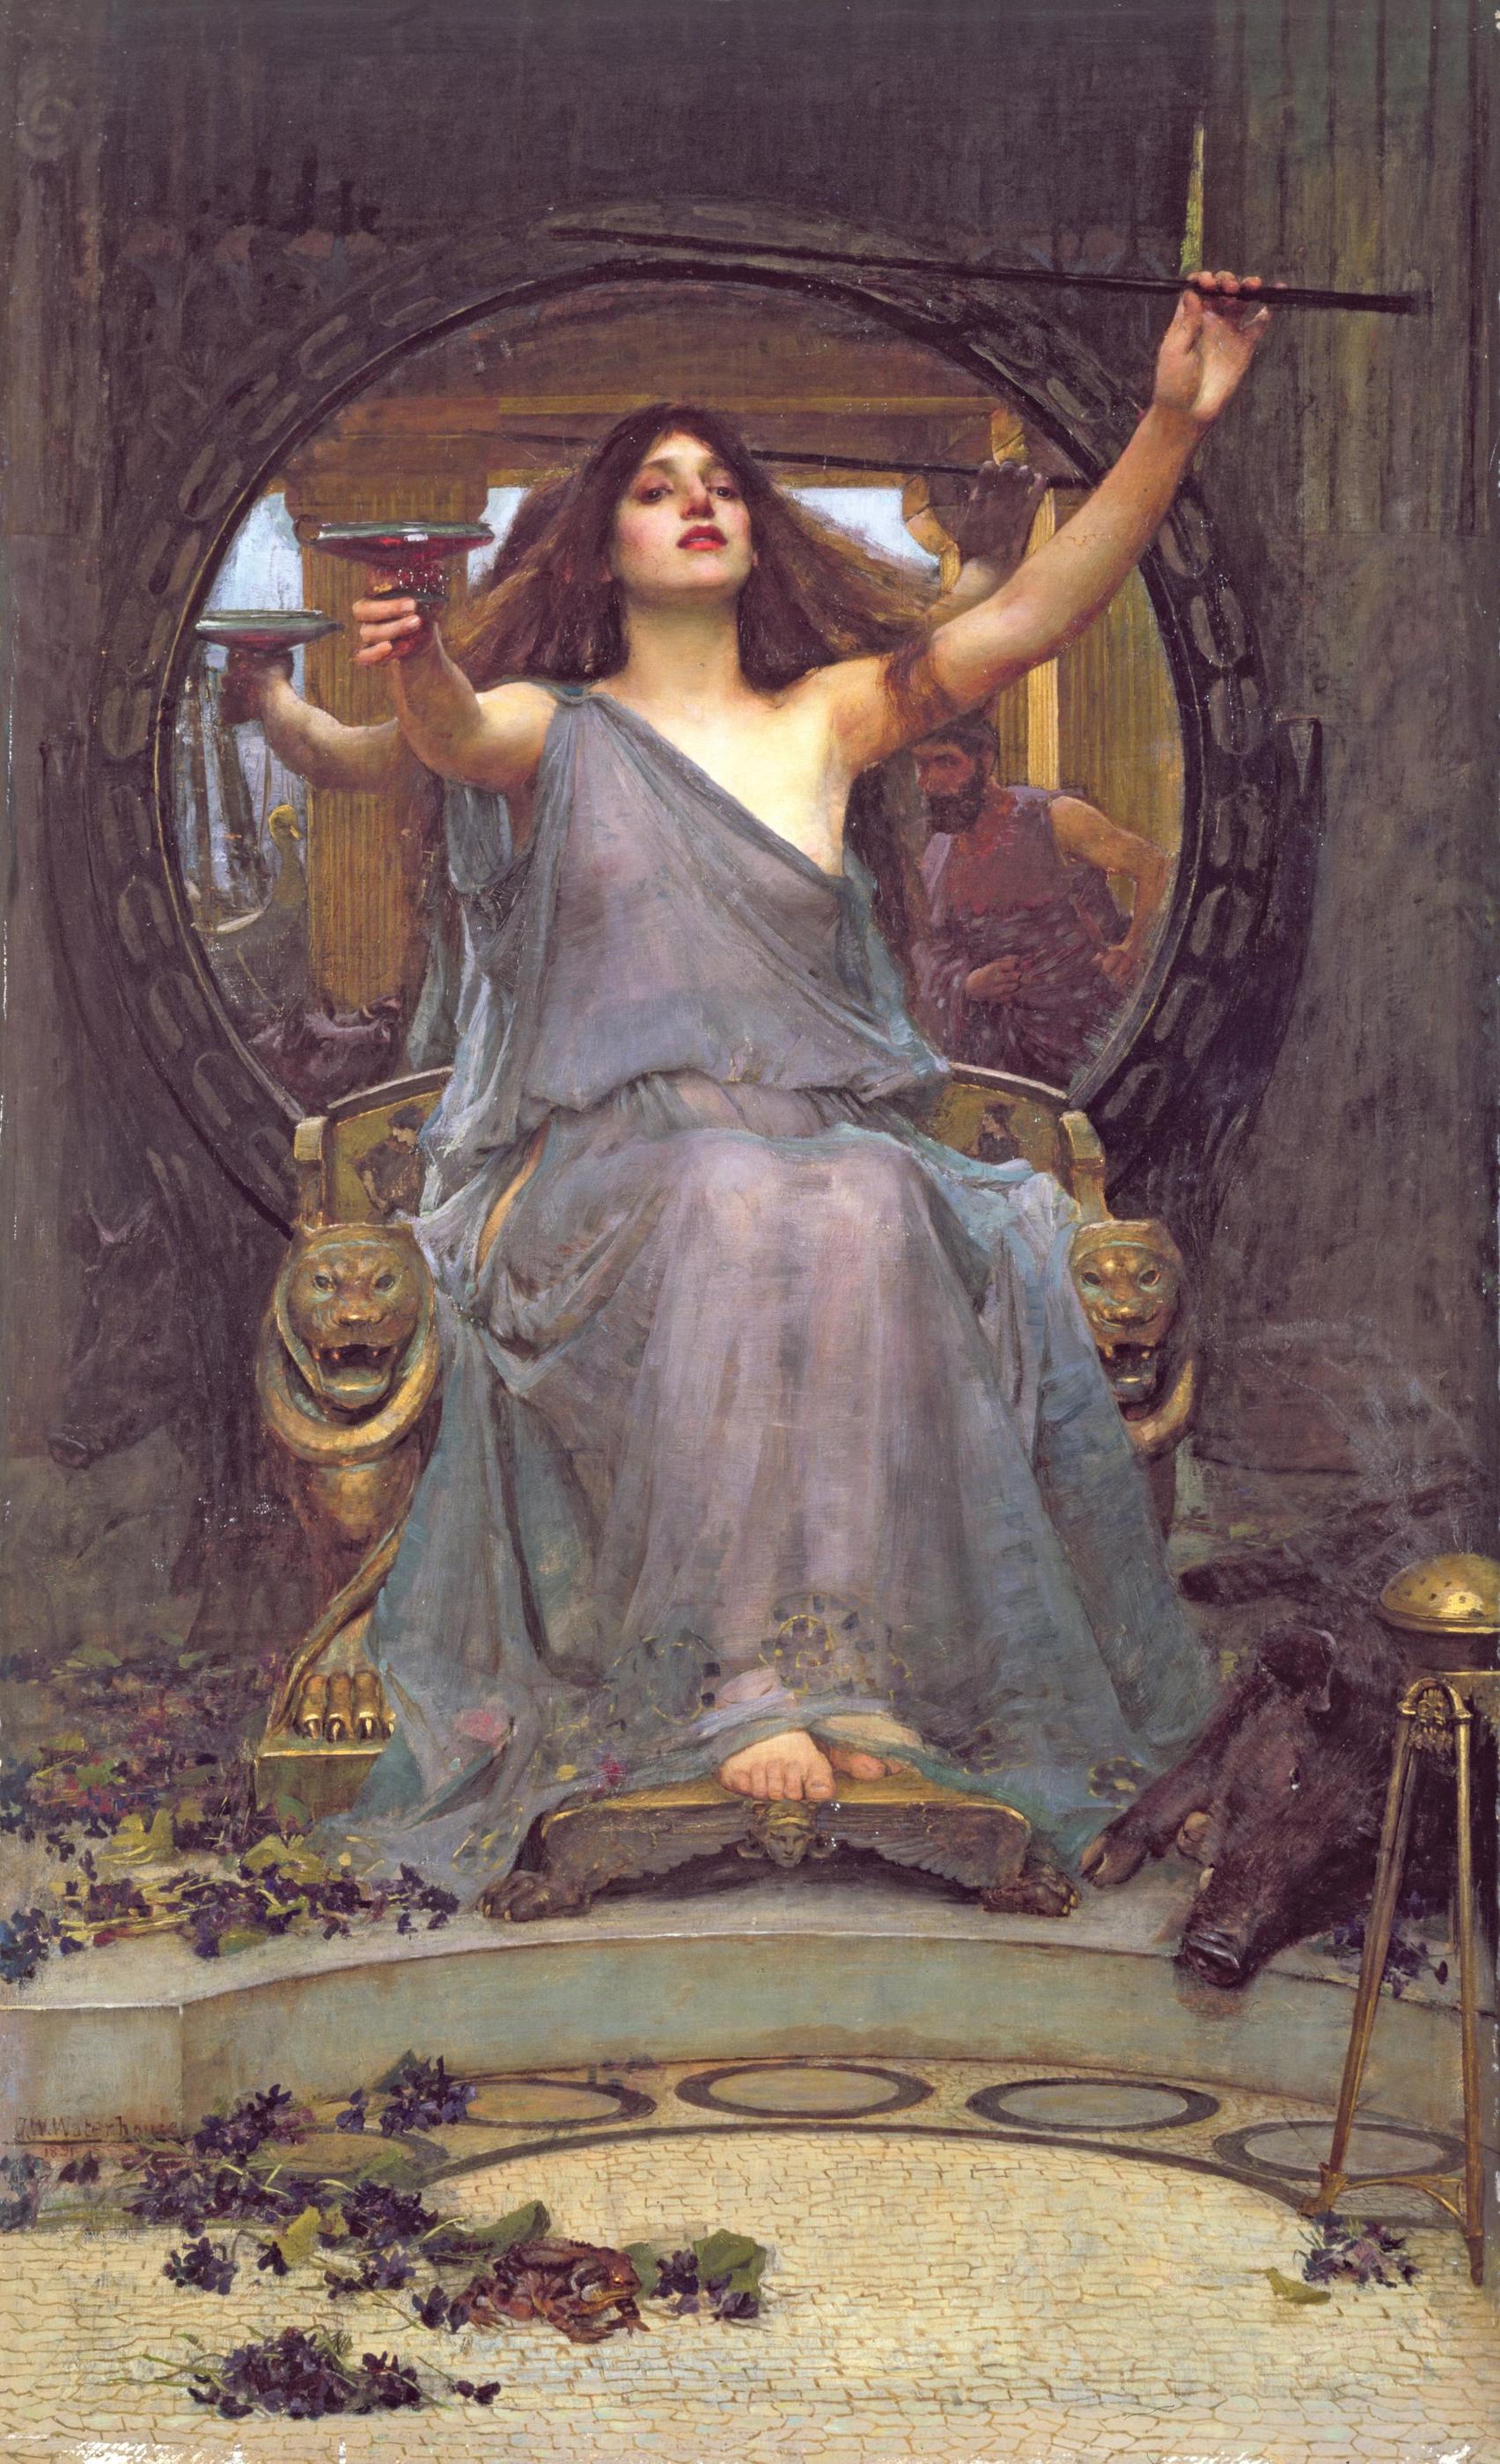 喀耳刻向尤利西斯献上酒杯 by 约翰 威廉·沃特豪斯 - 1891年 - 175厘米×92厘米 